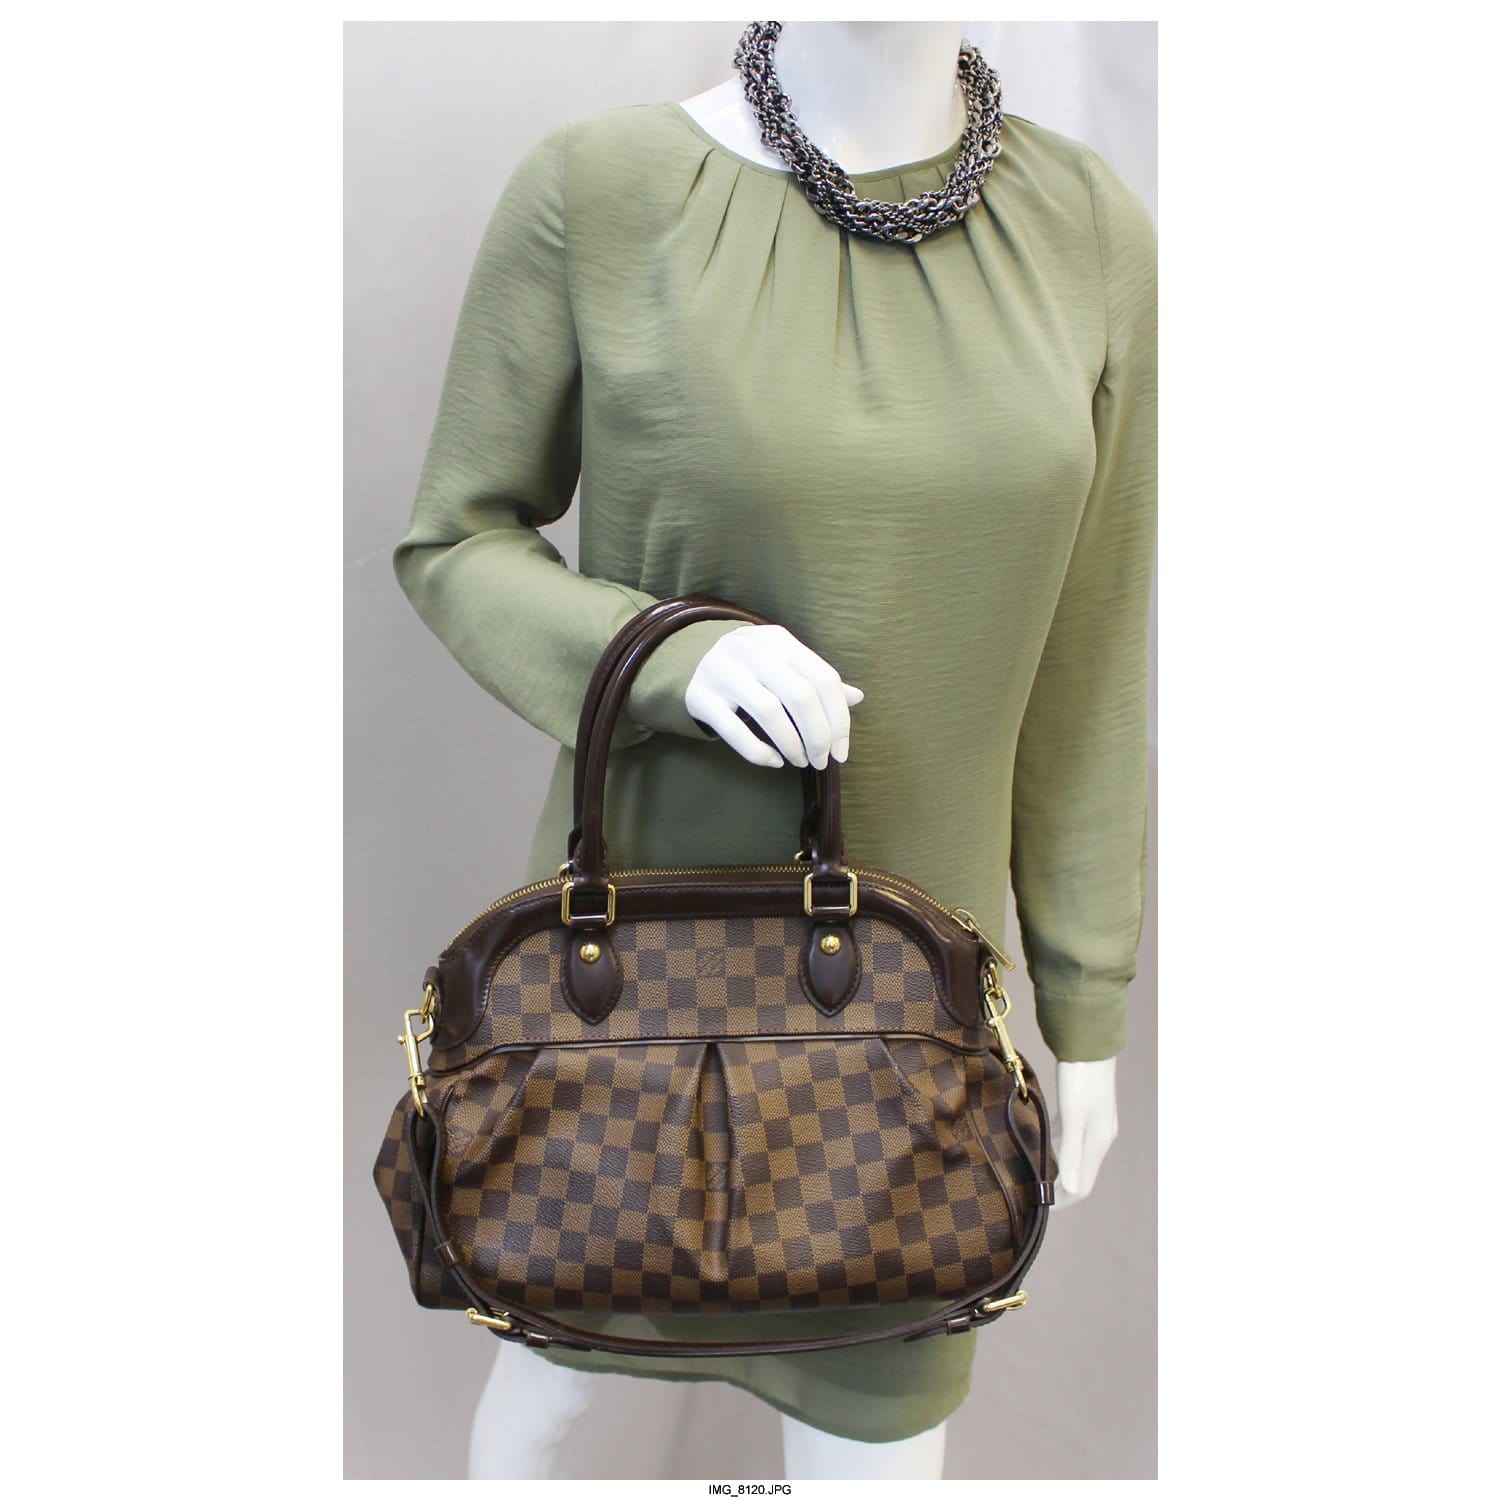 Authentic Louis Vuitton Damier Trevi PM Shoulder Bag EXCELLENT